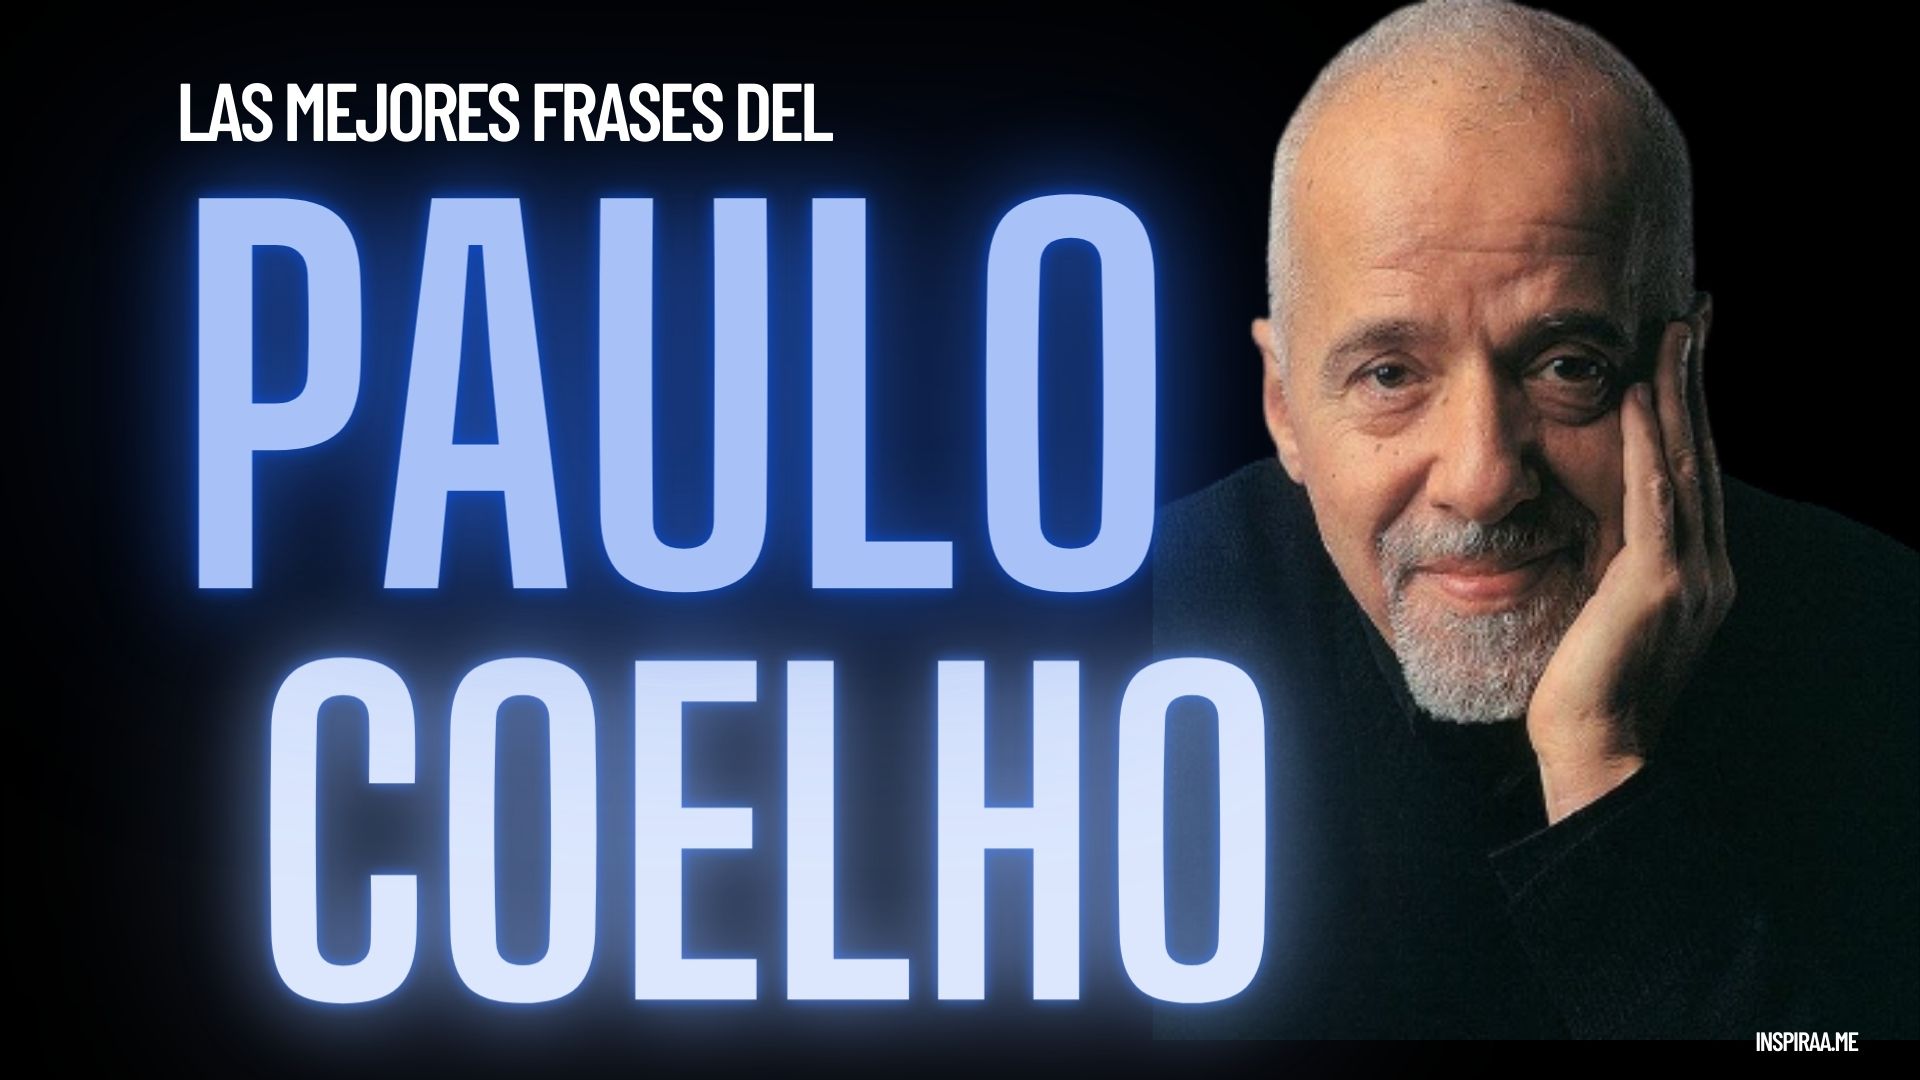 Paulo-Coelho-frases